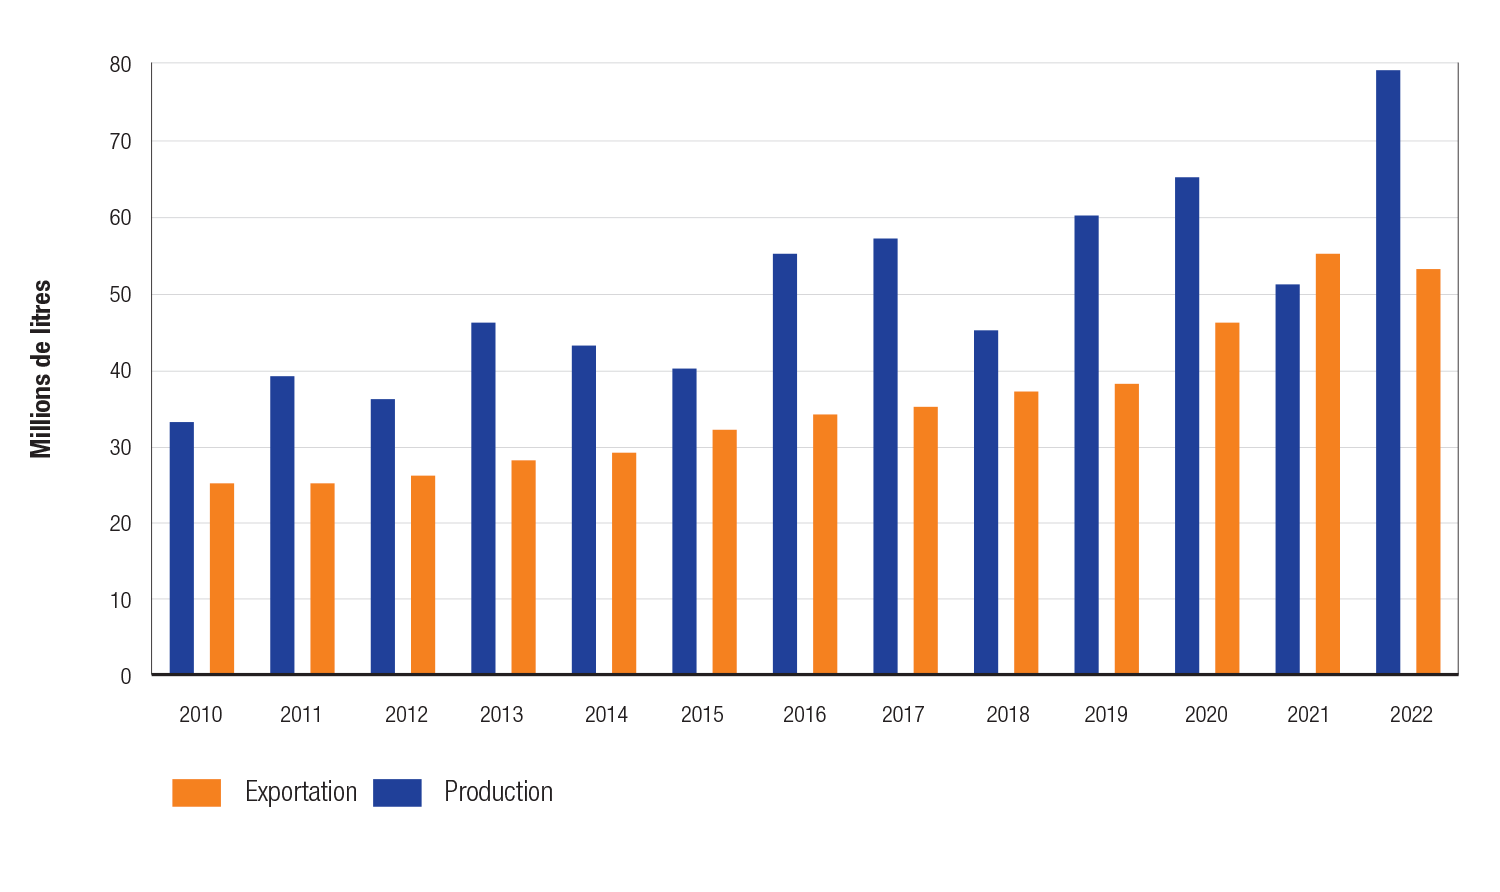 Graphique à barres montrant à la fois la production (en millions de litres) en bleu et les exportations (en millions de litres) en orange de sirop d’érable pour les années 2010 à 2022.